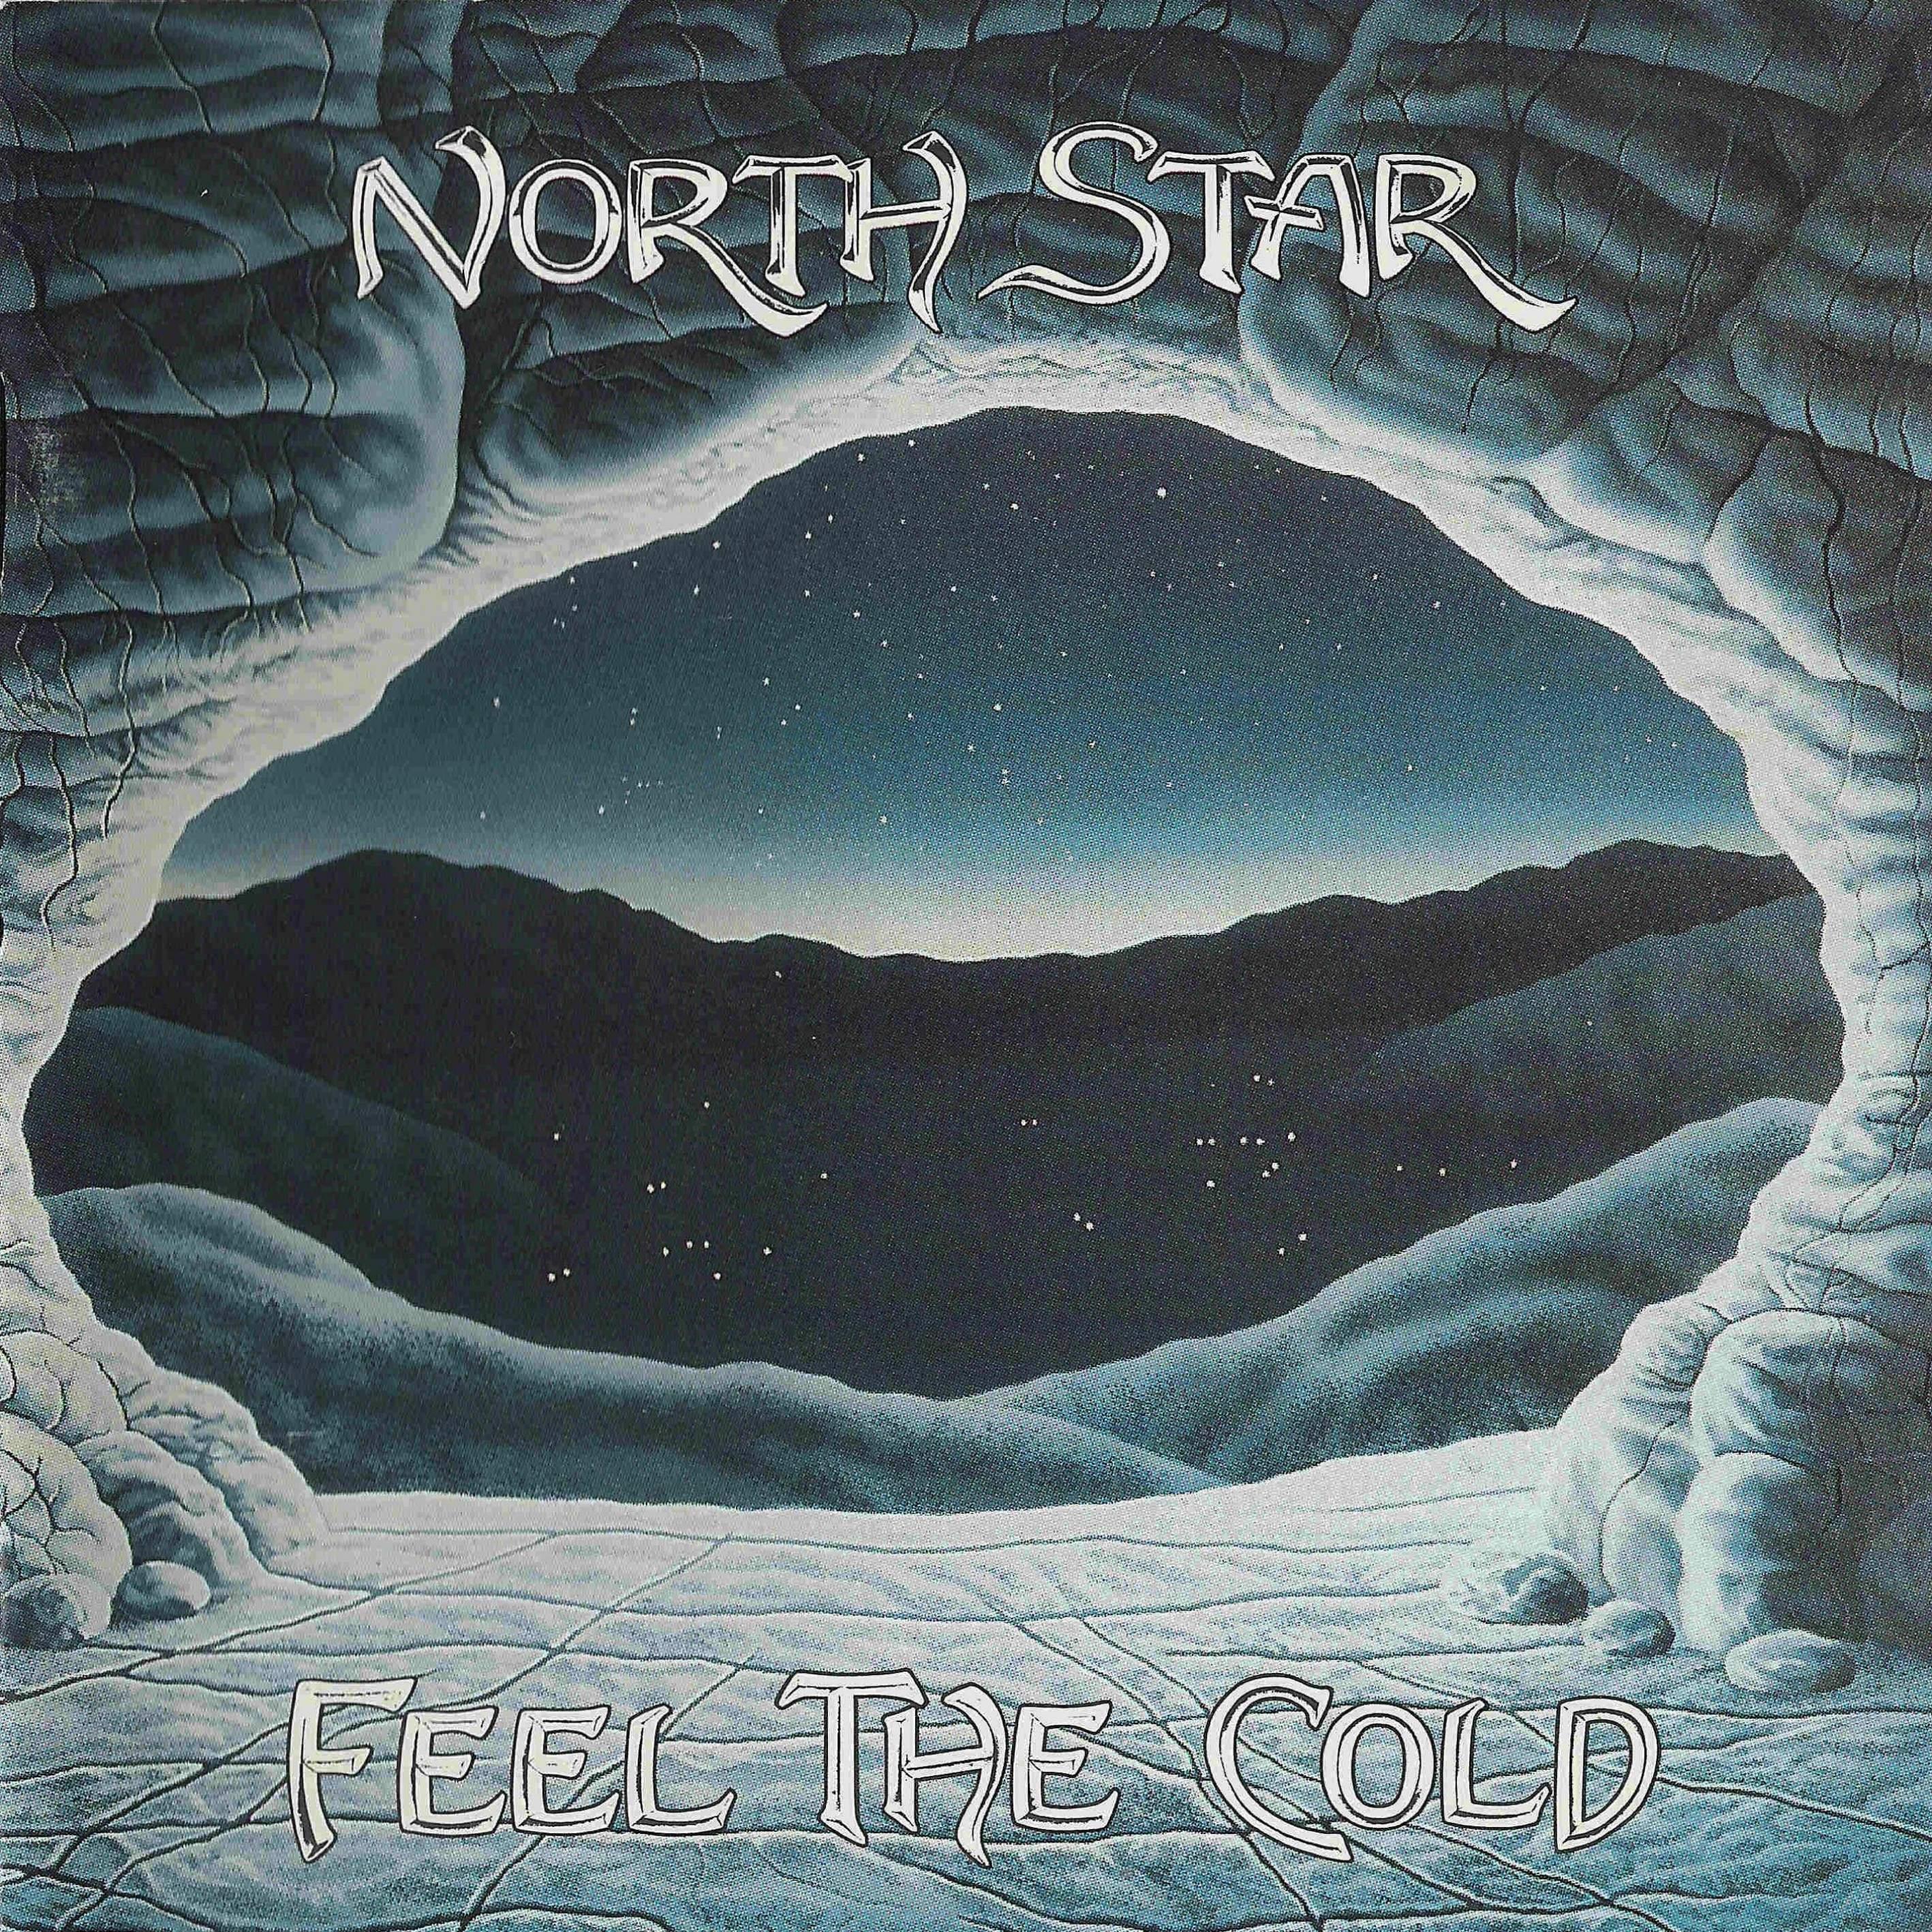 Северная звезда песня. North Star. Star one discography. Feel Star. Обложка сруб дискография mp3.